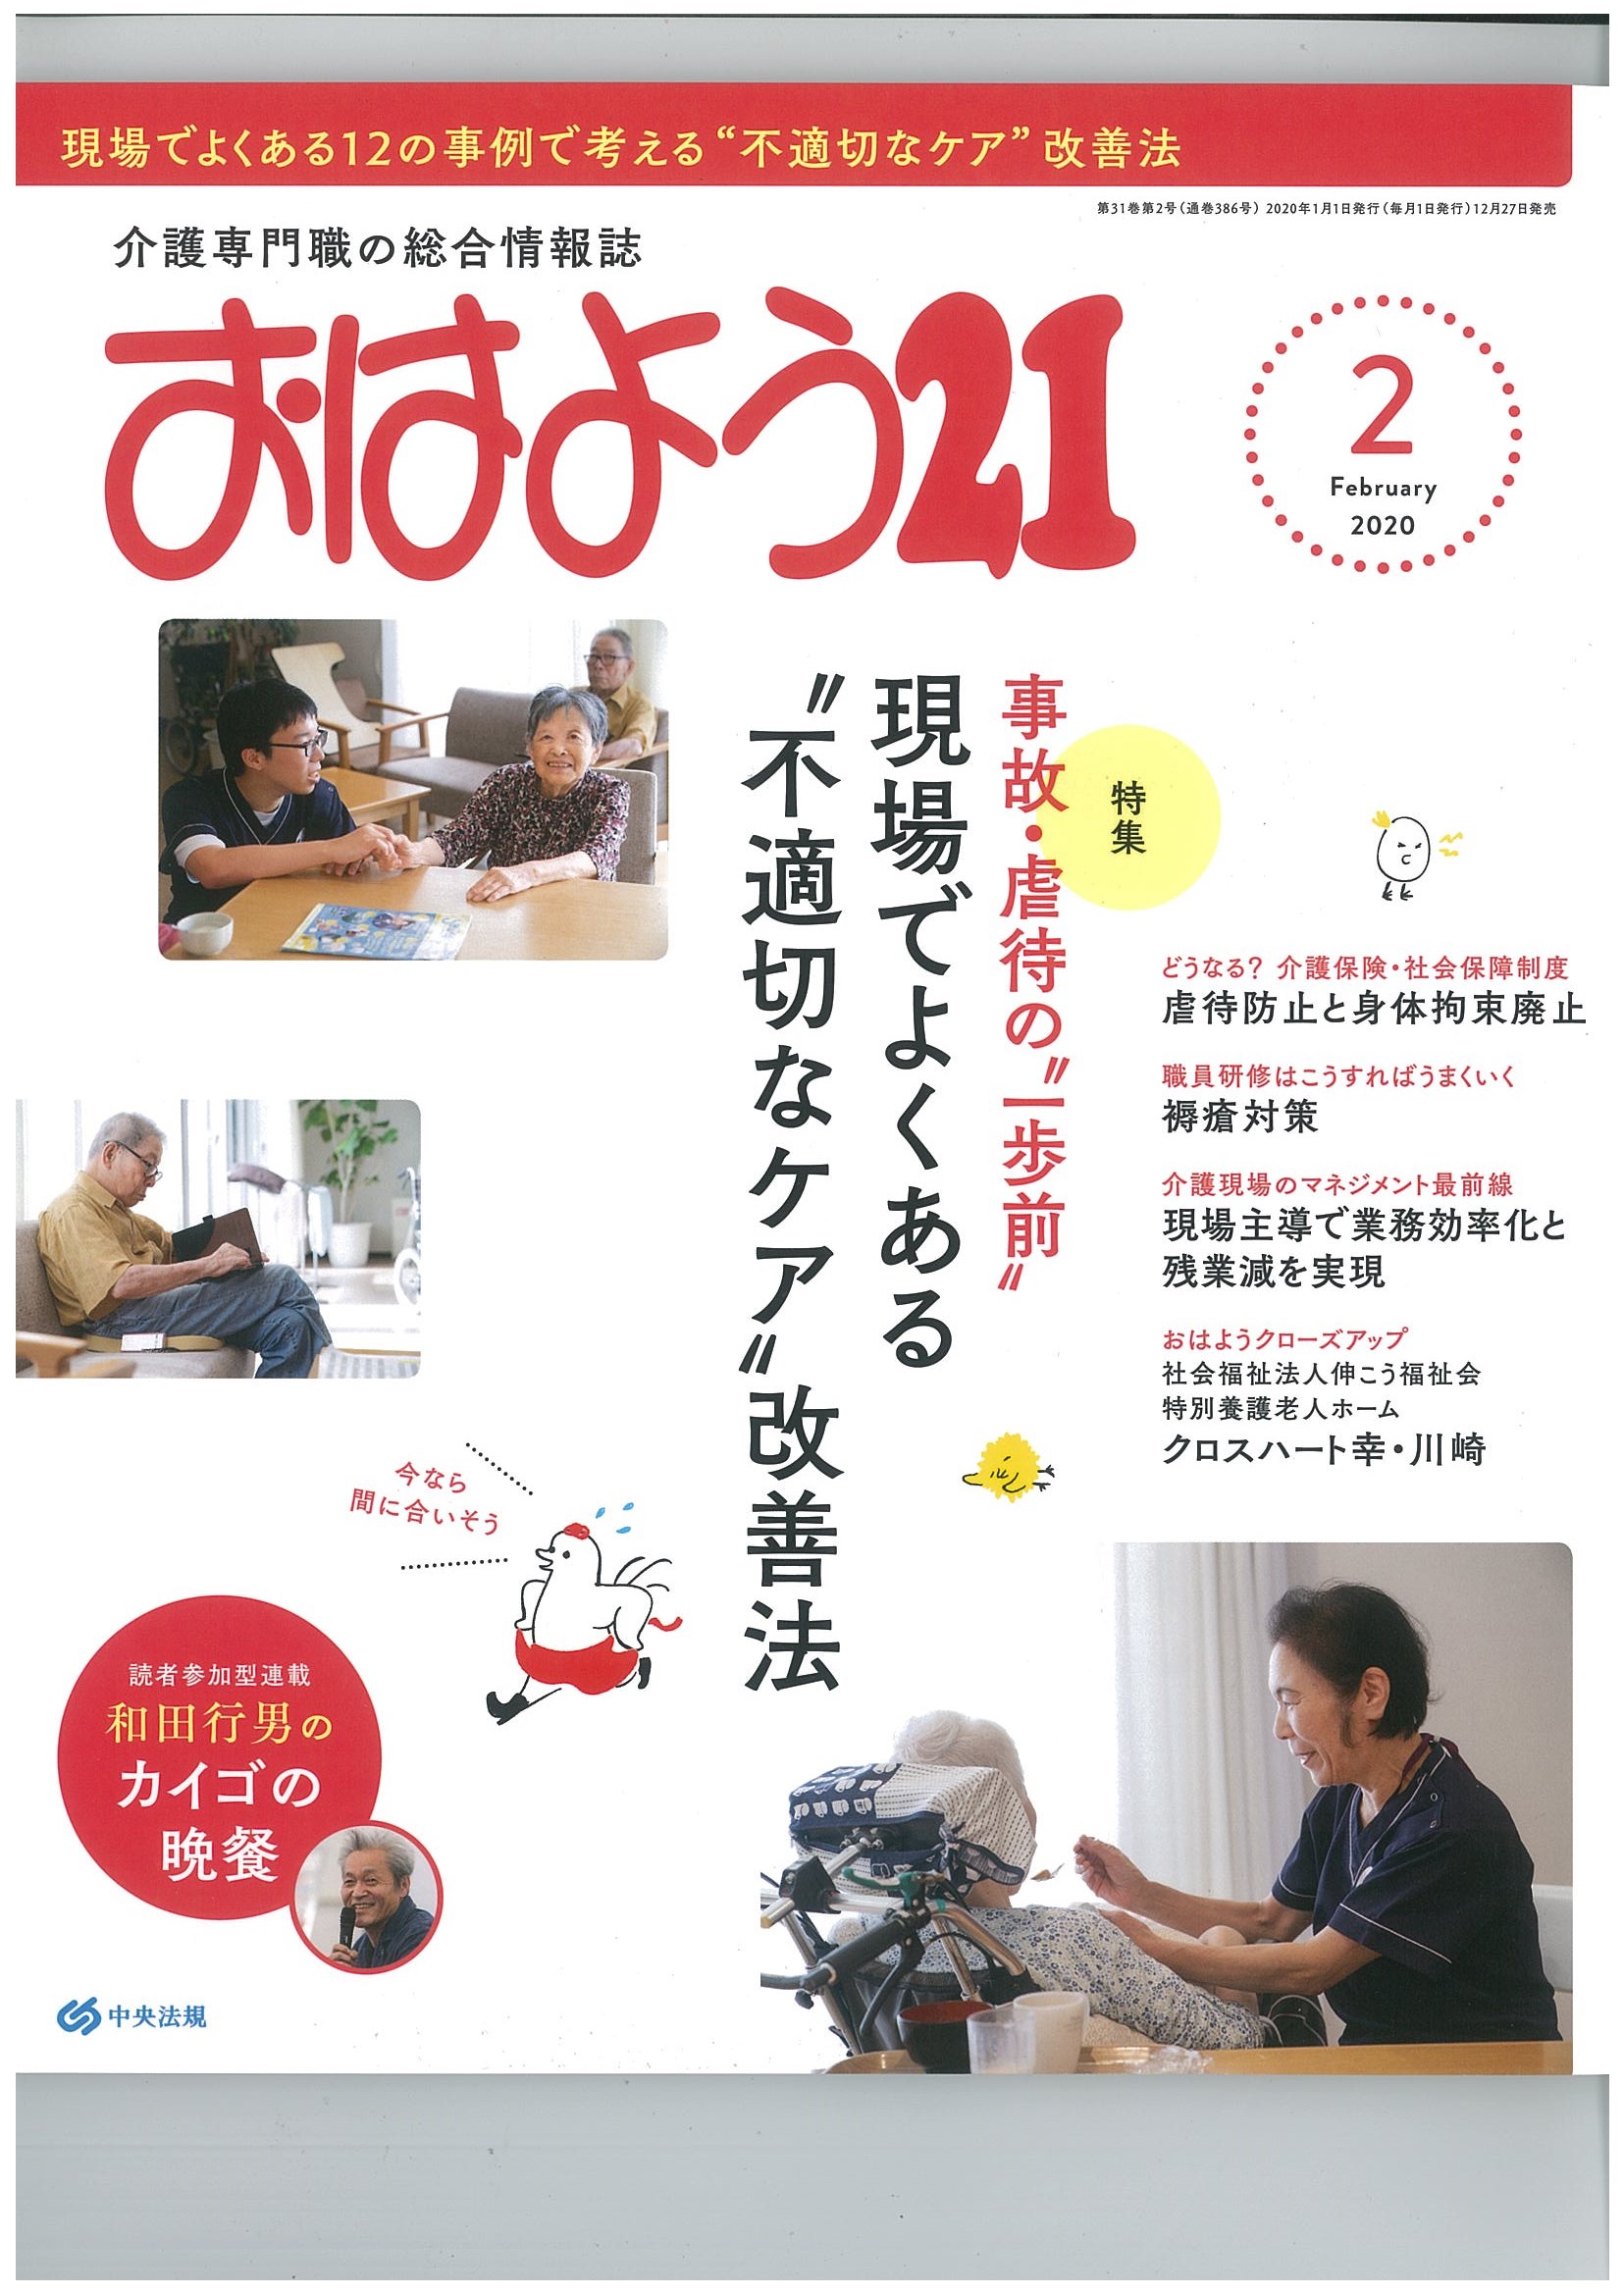 【メディア掲載】「おはよう２１」（2020年2月号）に「クロスハート幸・川崎」の記事が掲載されました